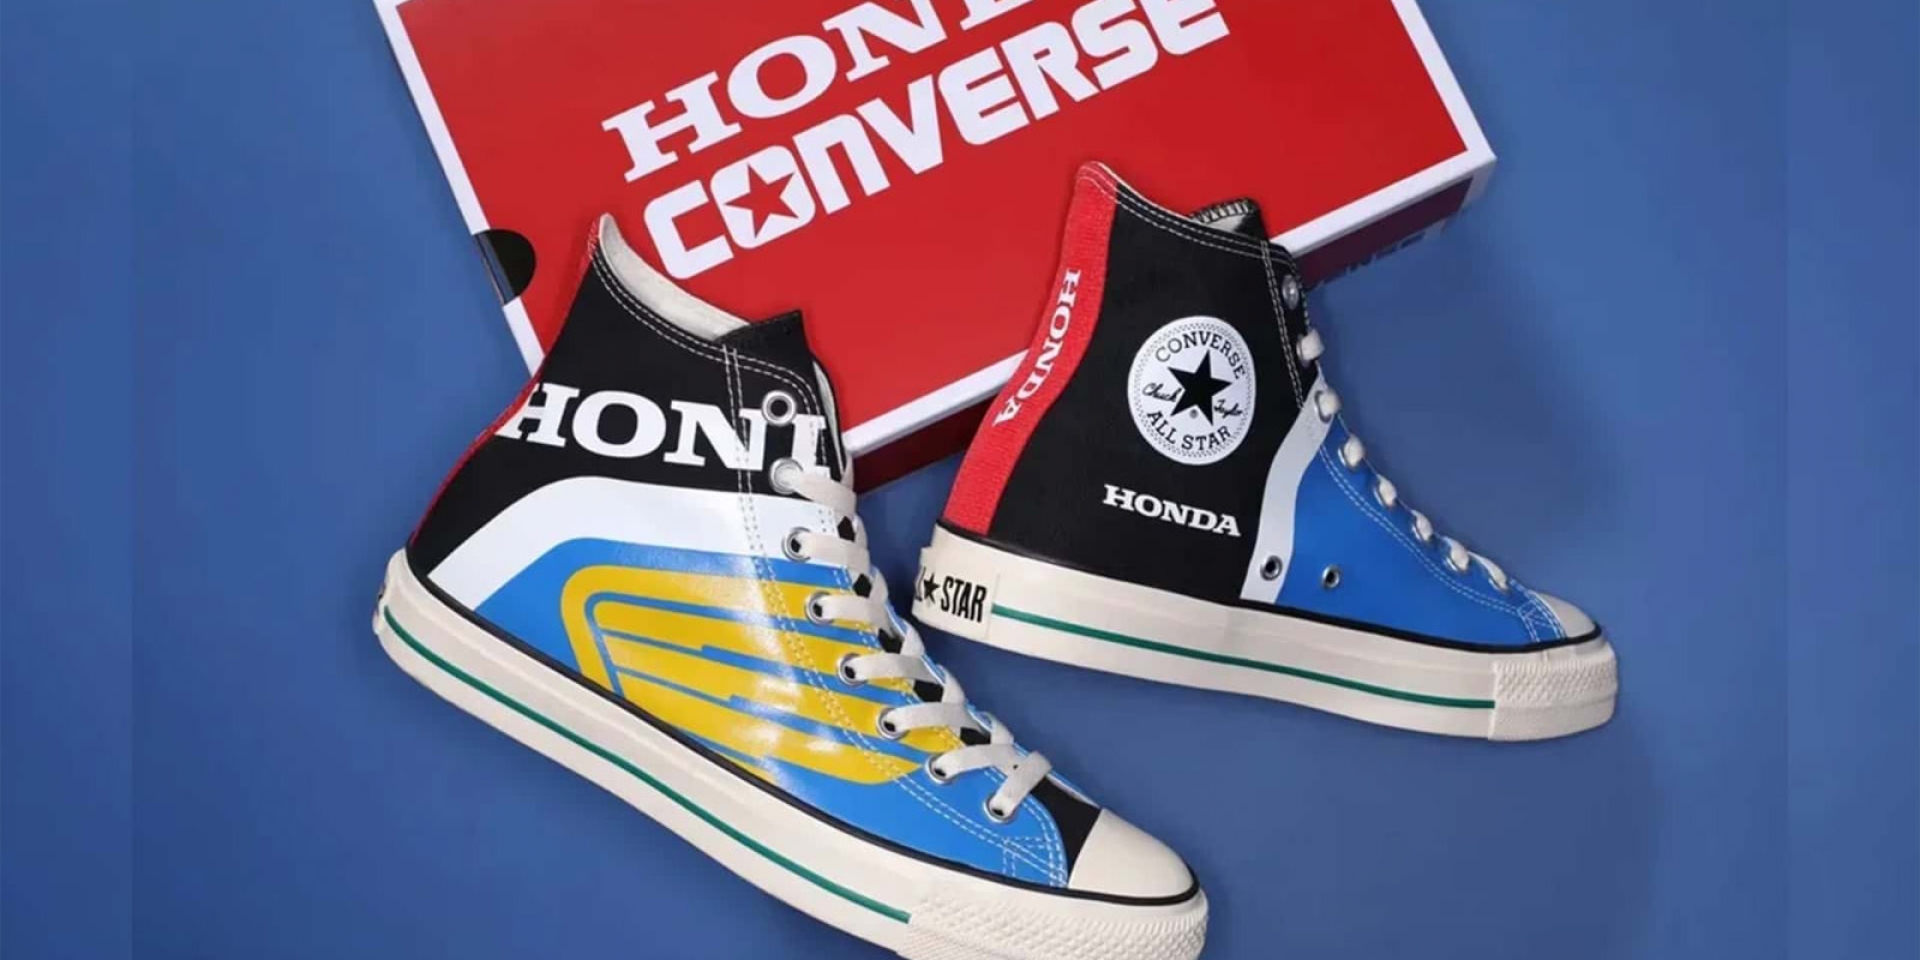 75週年聯名紀念！Honda X Converse All-Star Series 雙鞋款「14,300日圓」海外發售中